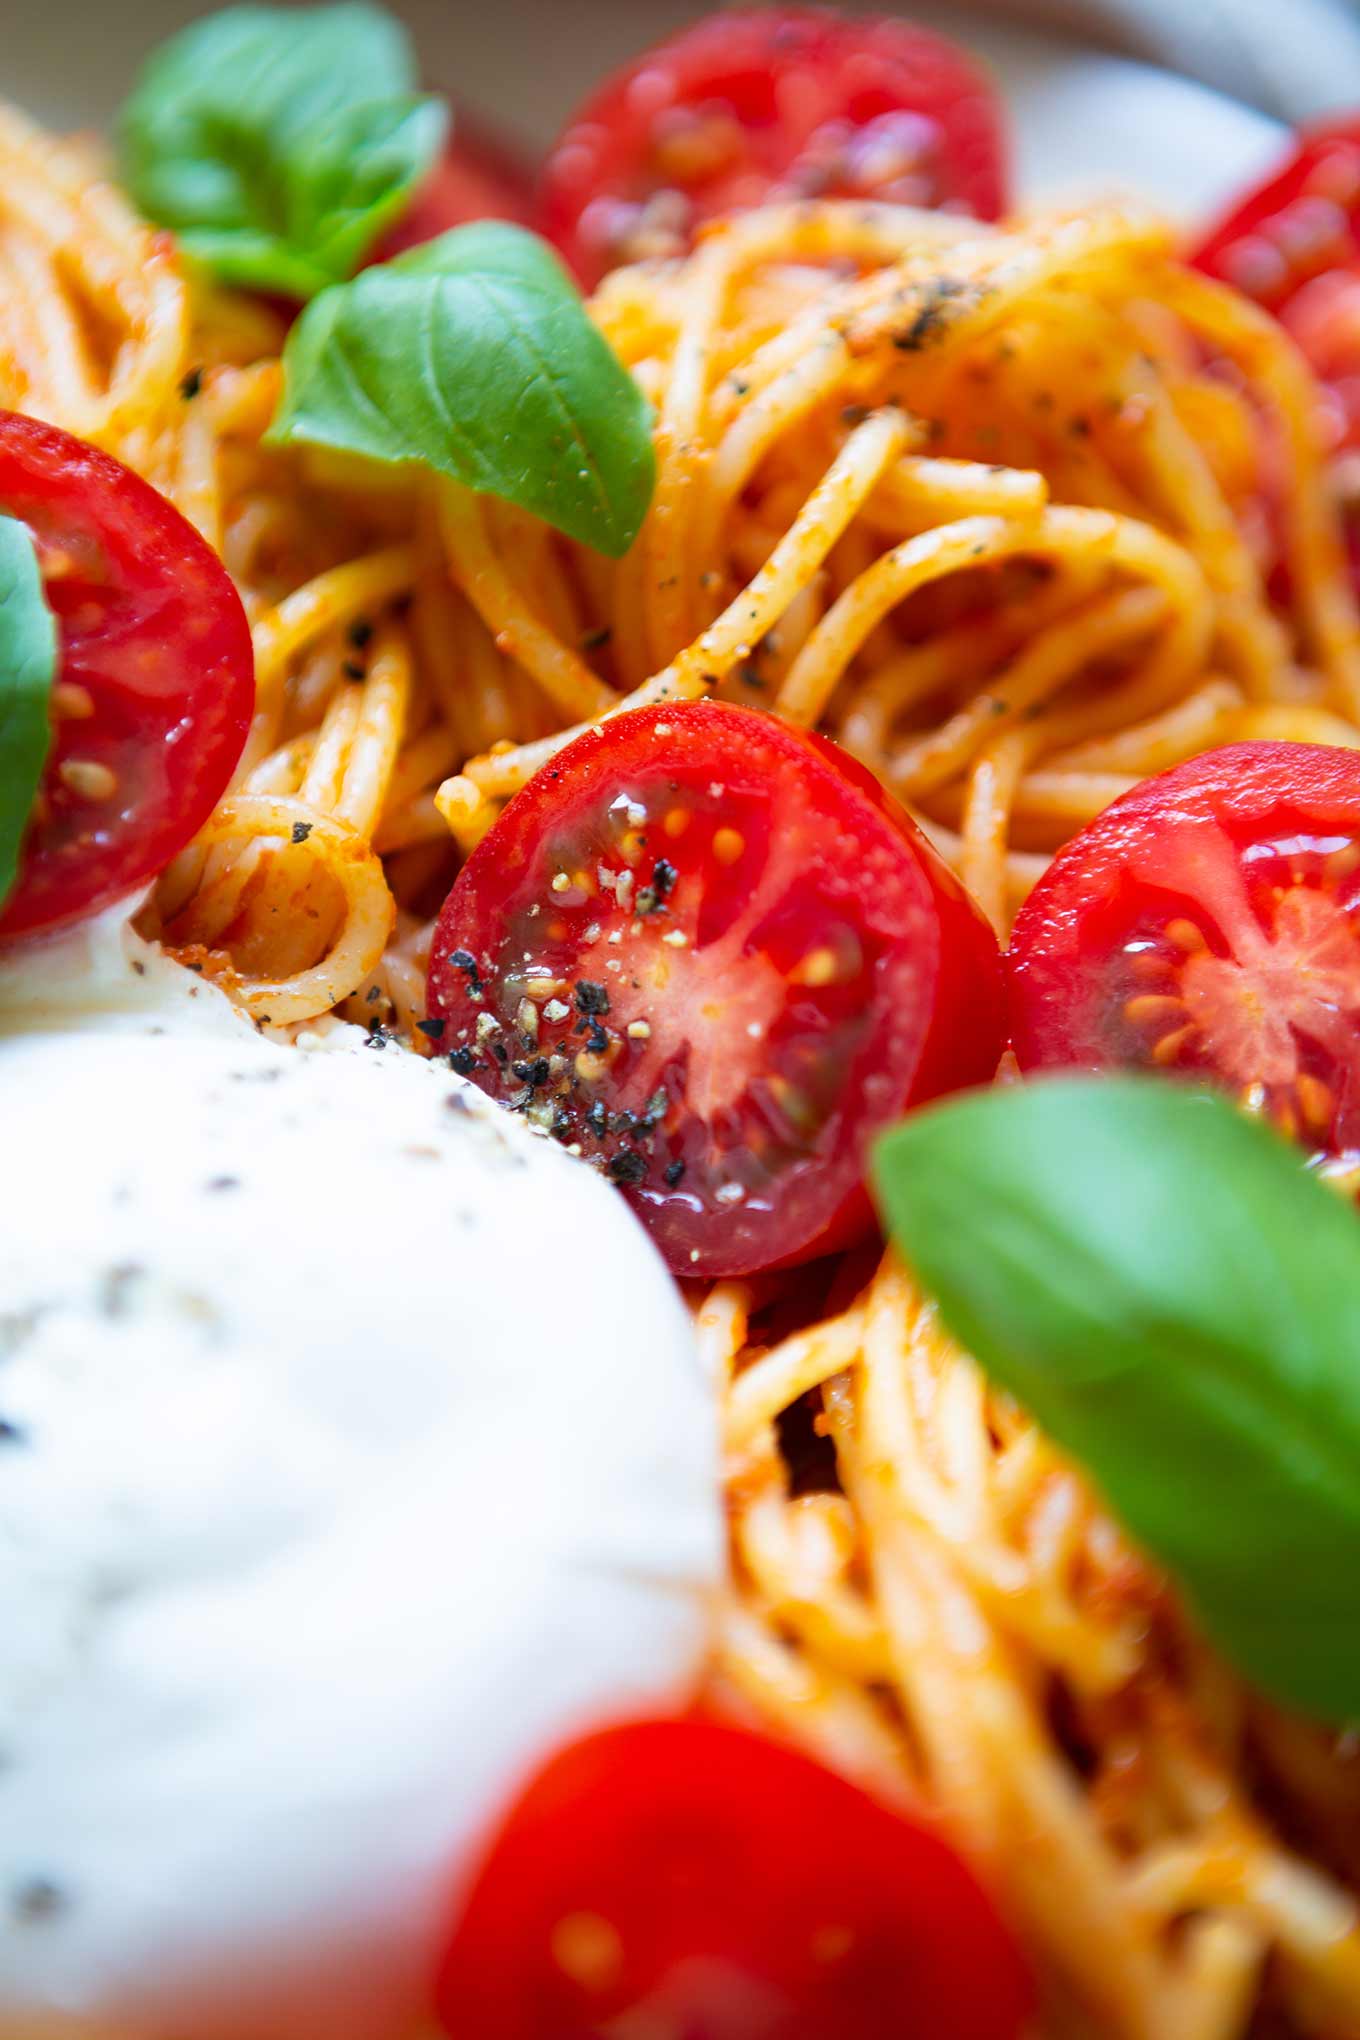 Tomaten-Pesto-Spaghetti mit Burrata und Basilikum. Dieses 5-Zutaten Rezept ist einfach, schnell und perfekt für heiße Sommertage. So gut! - Kochkarussell.com #spaghetti #burrata #sommerrezept #tomaten #schnellundeinfach